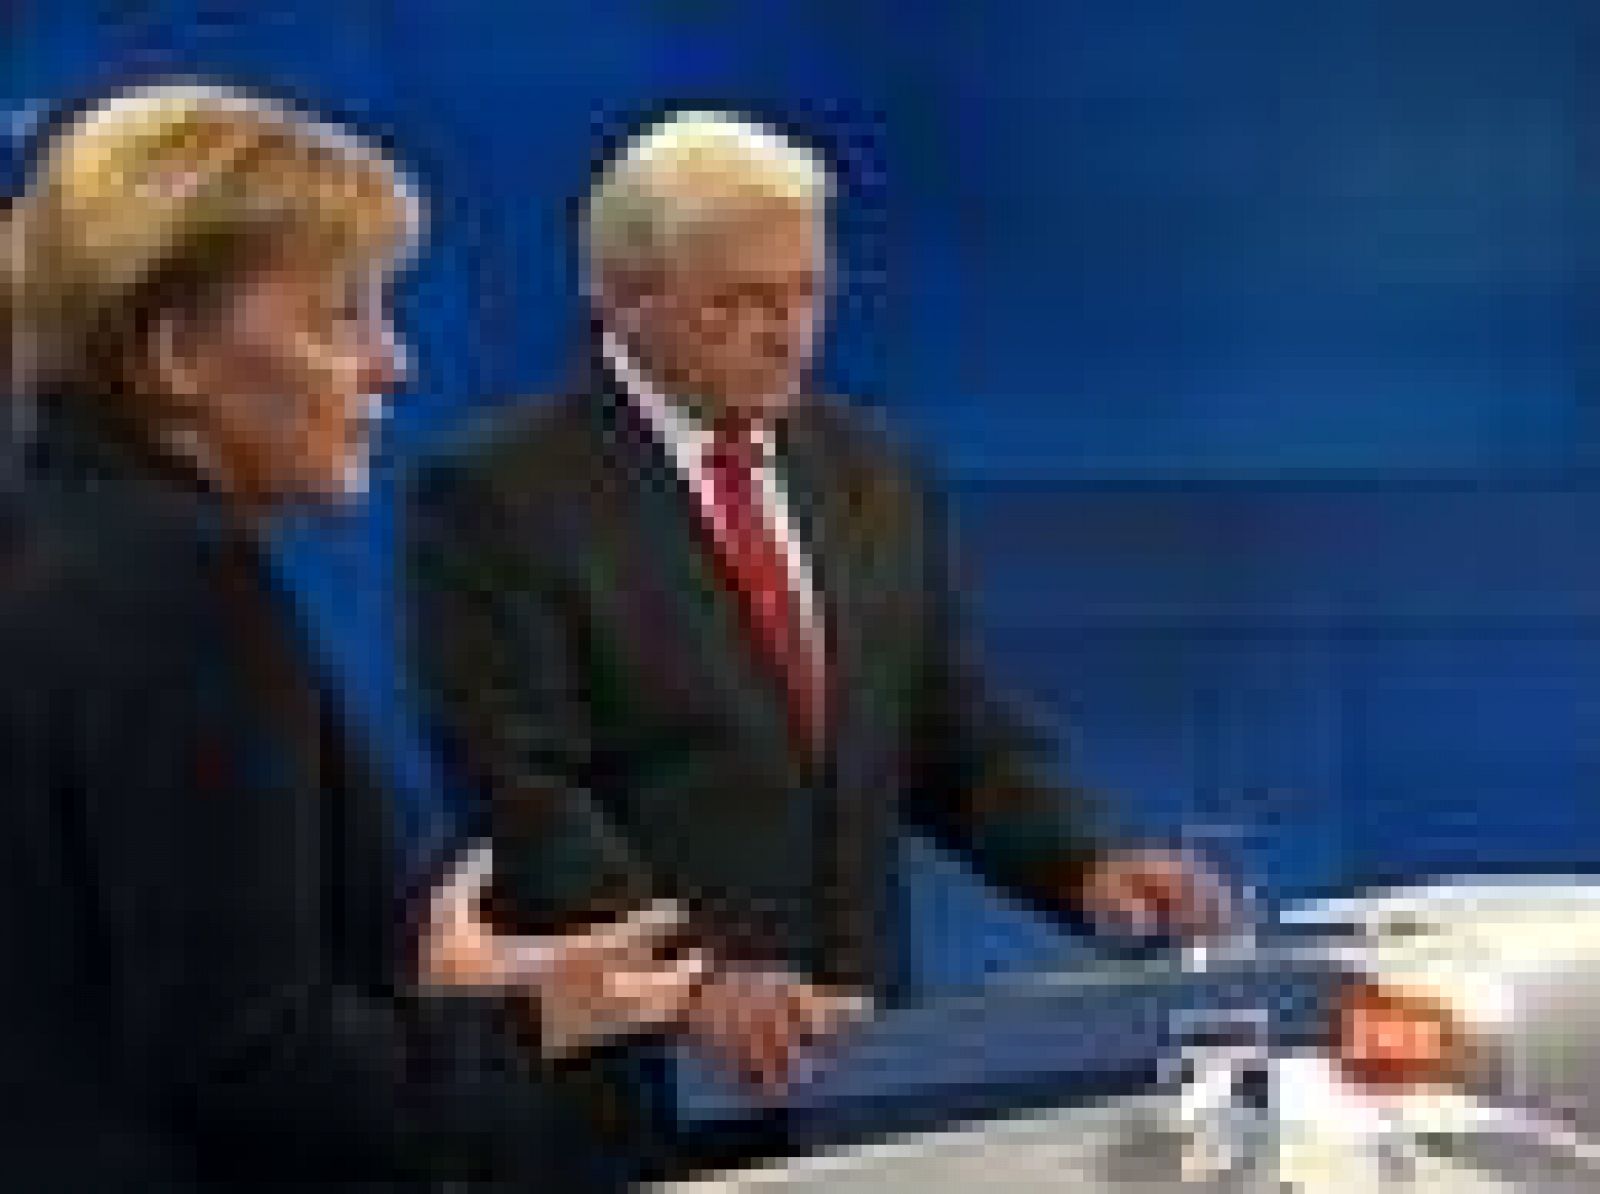 Los líderes de los dos grandes partidos alemanes, Angela Merkel (CDU, derecha) y Frank-Walter Steinmeier (SPD, centro-izquierda) se han enfrentado en un debate televisado de cara a las próximas elecciones legislativas. Sin embargo, han preferido defender su labor en la gran coalición como candiller y vicecanciller.  